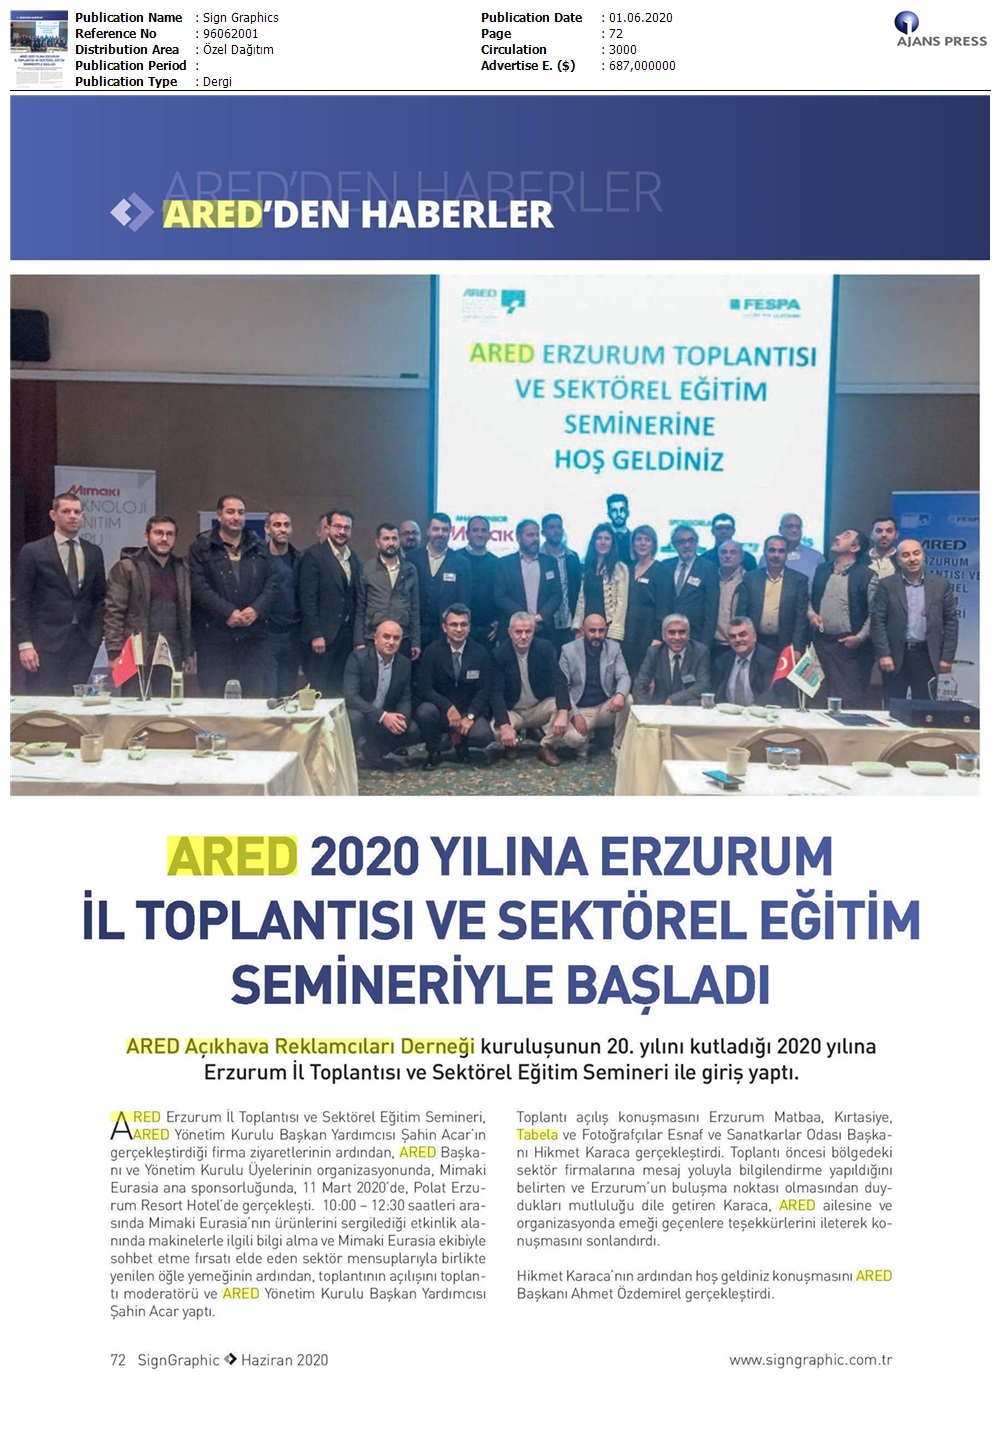 ARED 2020 yılına Erzurum il toplantısı ve sektörel eğitim semineriyle başladı